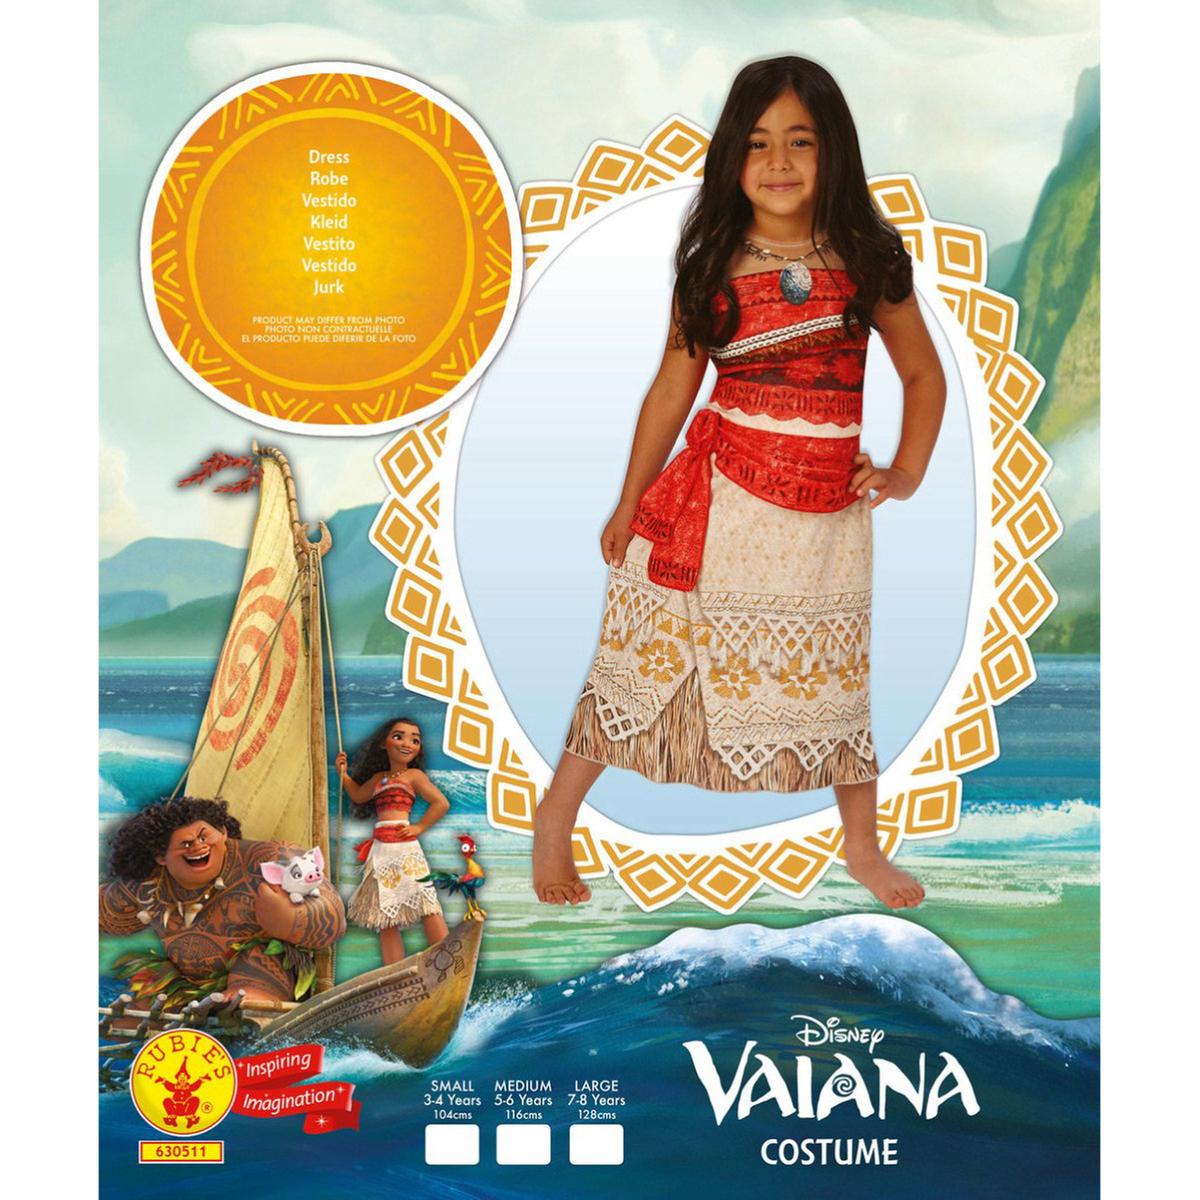 Fantasia Moana Infantil Vestido Original Disney com Colar - 7